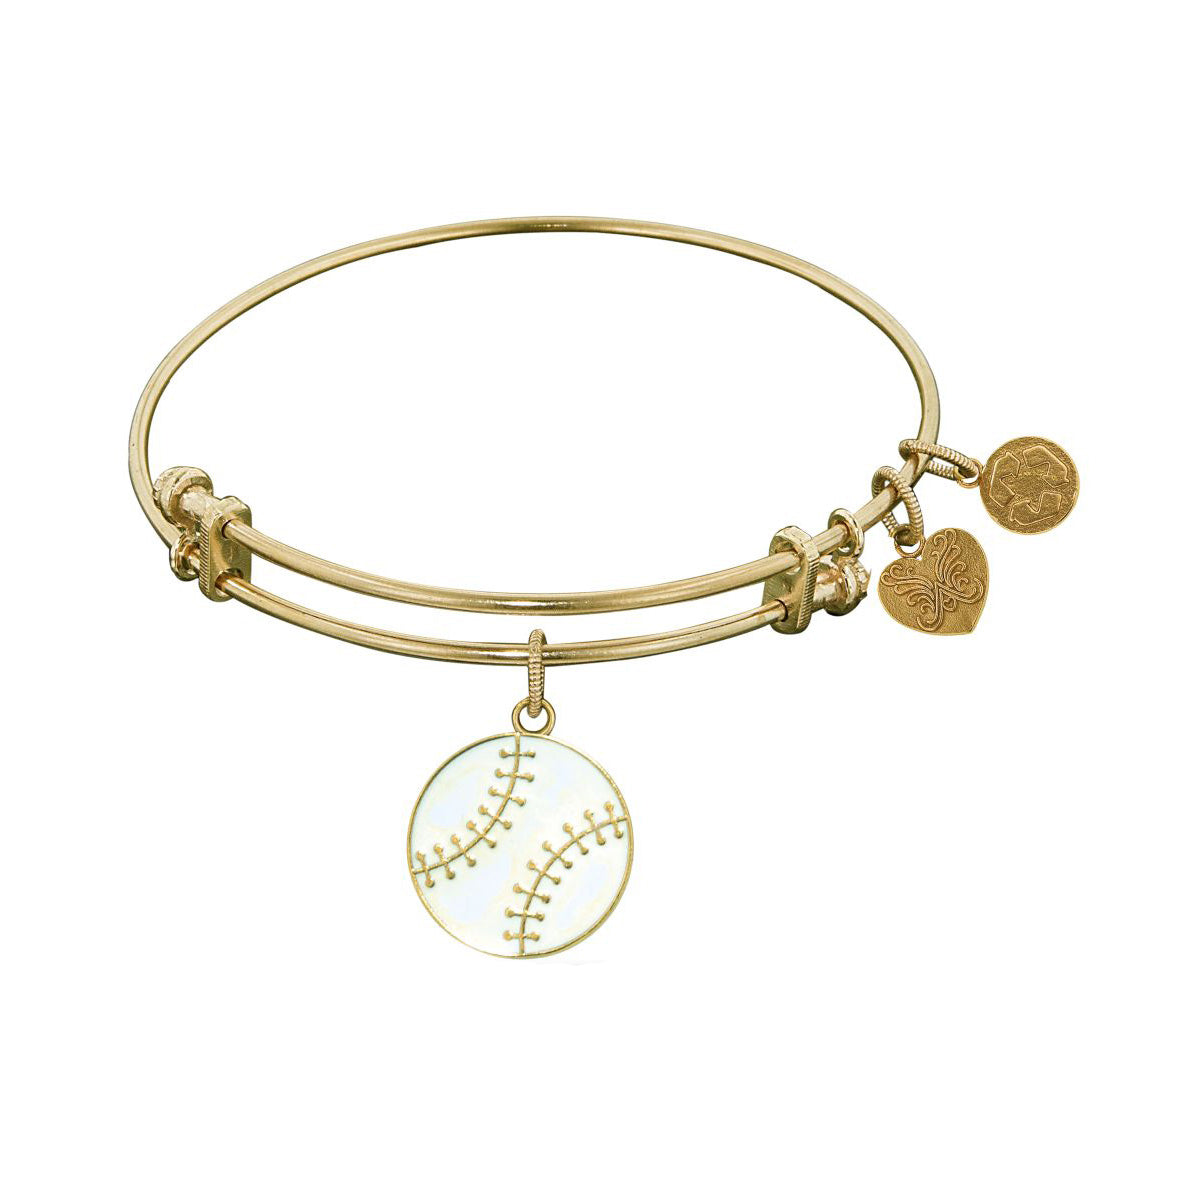 Stipple Finish Brass Baseball Angelica Bangle Bracelet, 7.25" fine designer jewelry for men and women